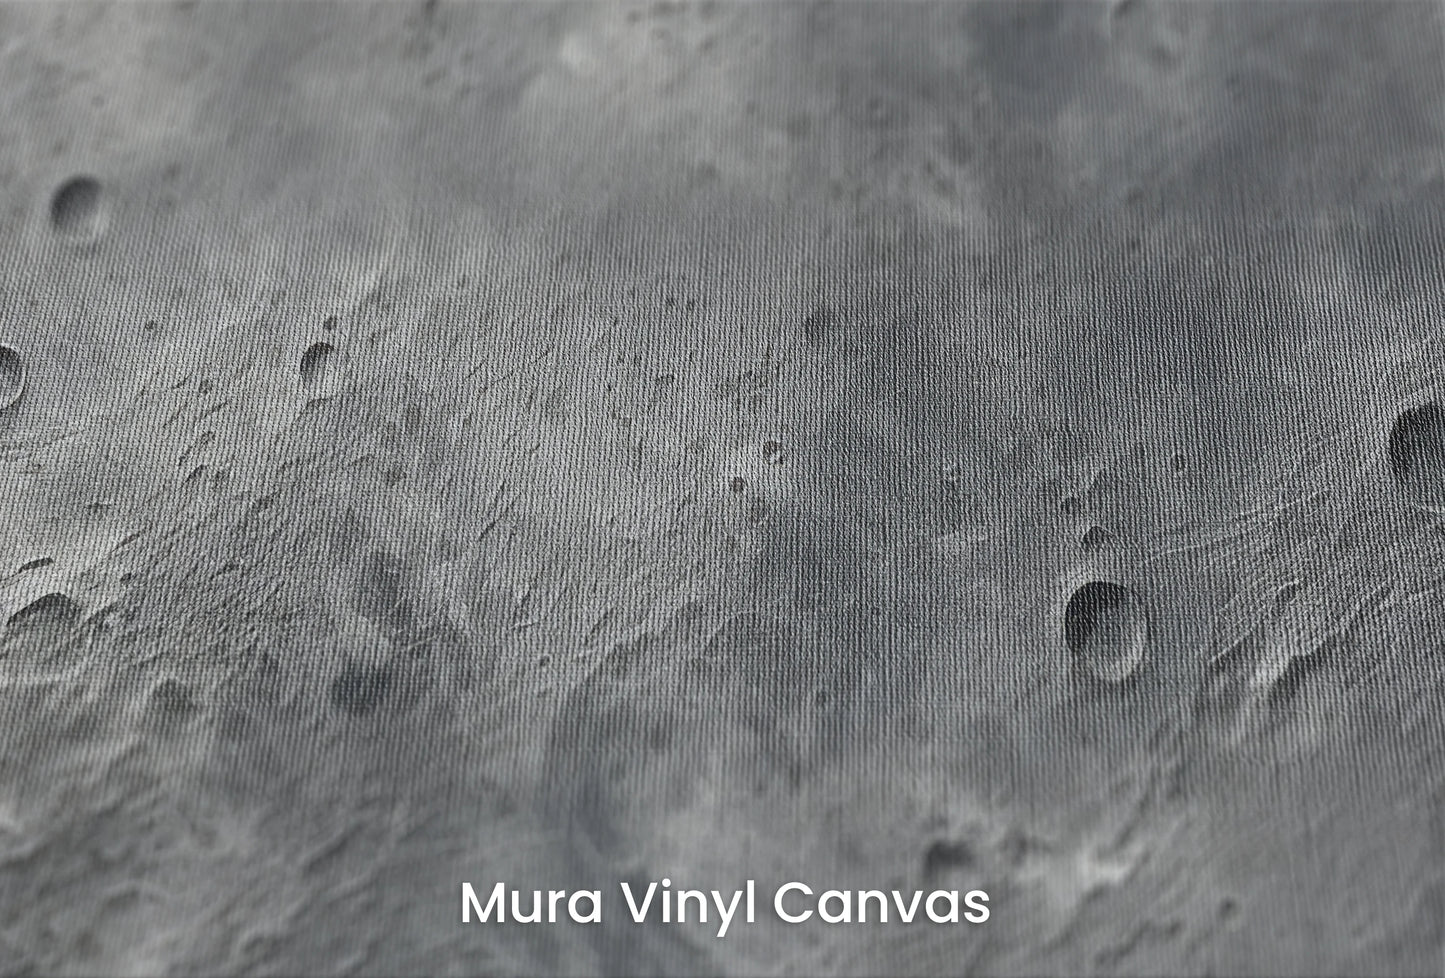 Zbliżenie na artystyczną fototapetę o nazwie Crater's Edge na podłożu Mura Vinyl Canvas - faktura naturalnego płótna.